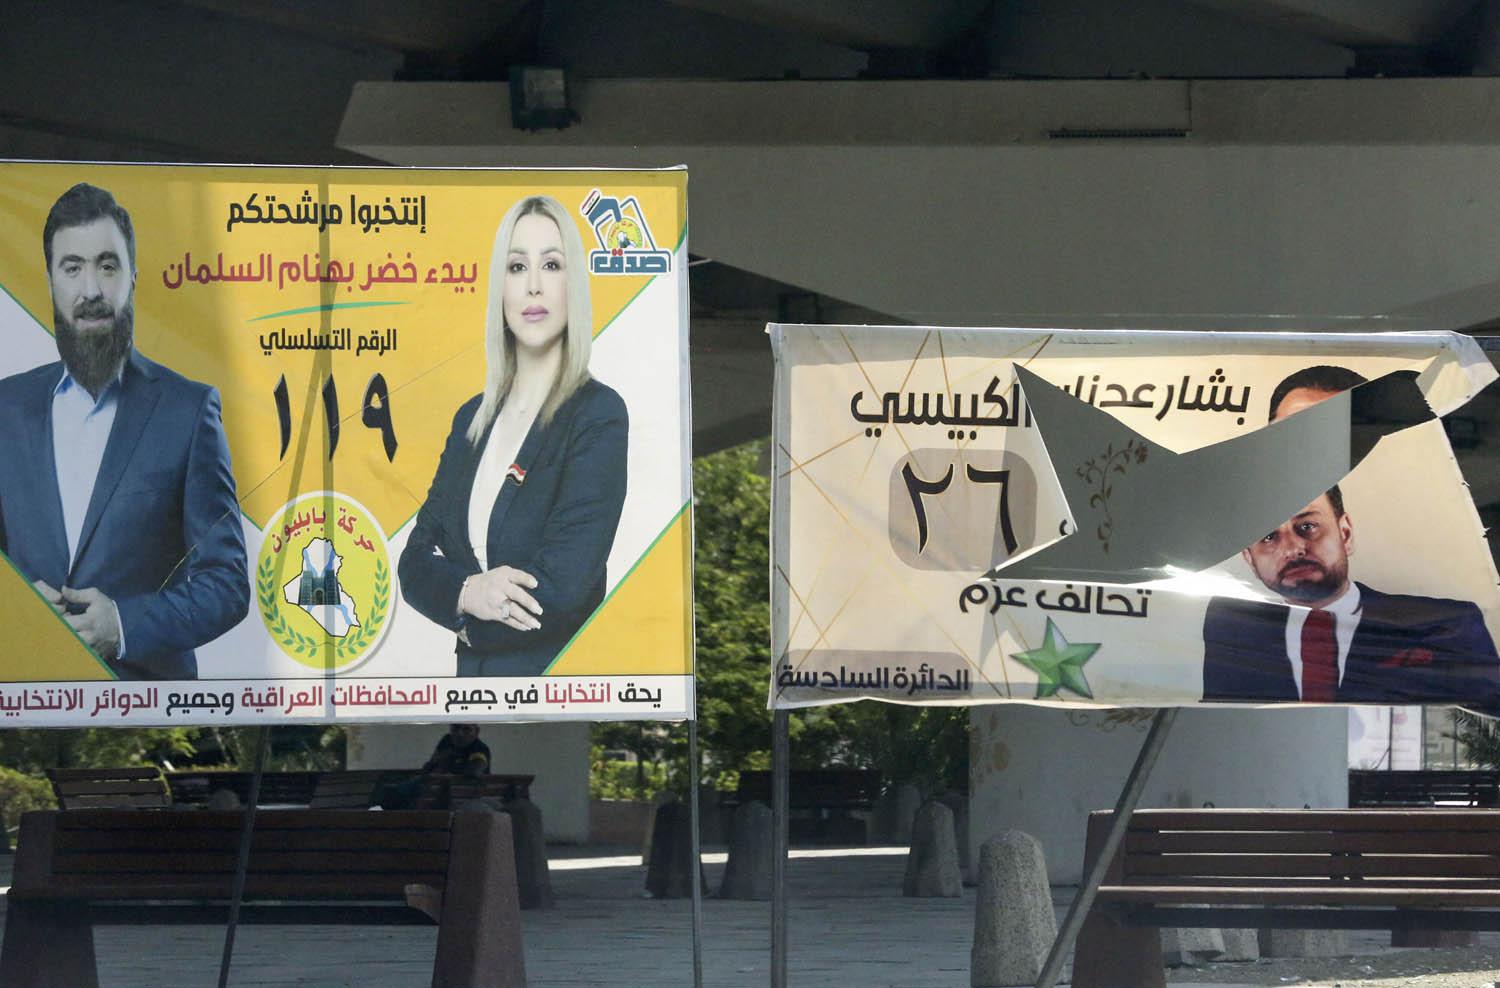 لافتات لمرشحين في الانتخابات العراقية في حي الاعظمية ببغداد